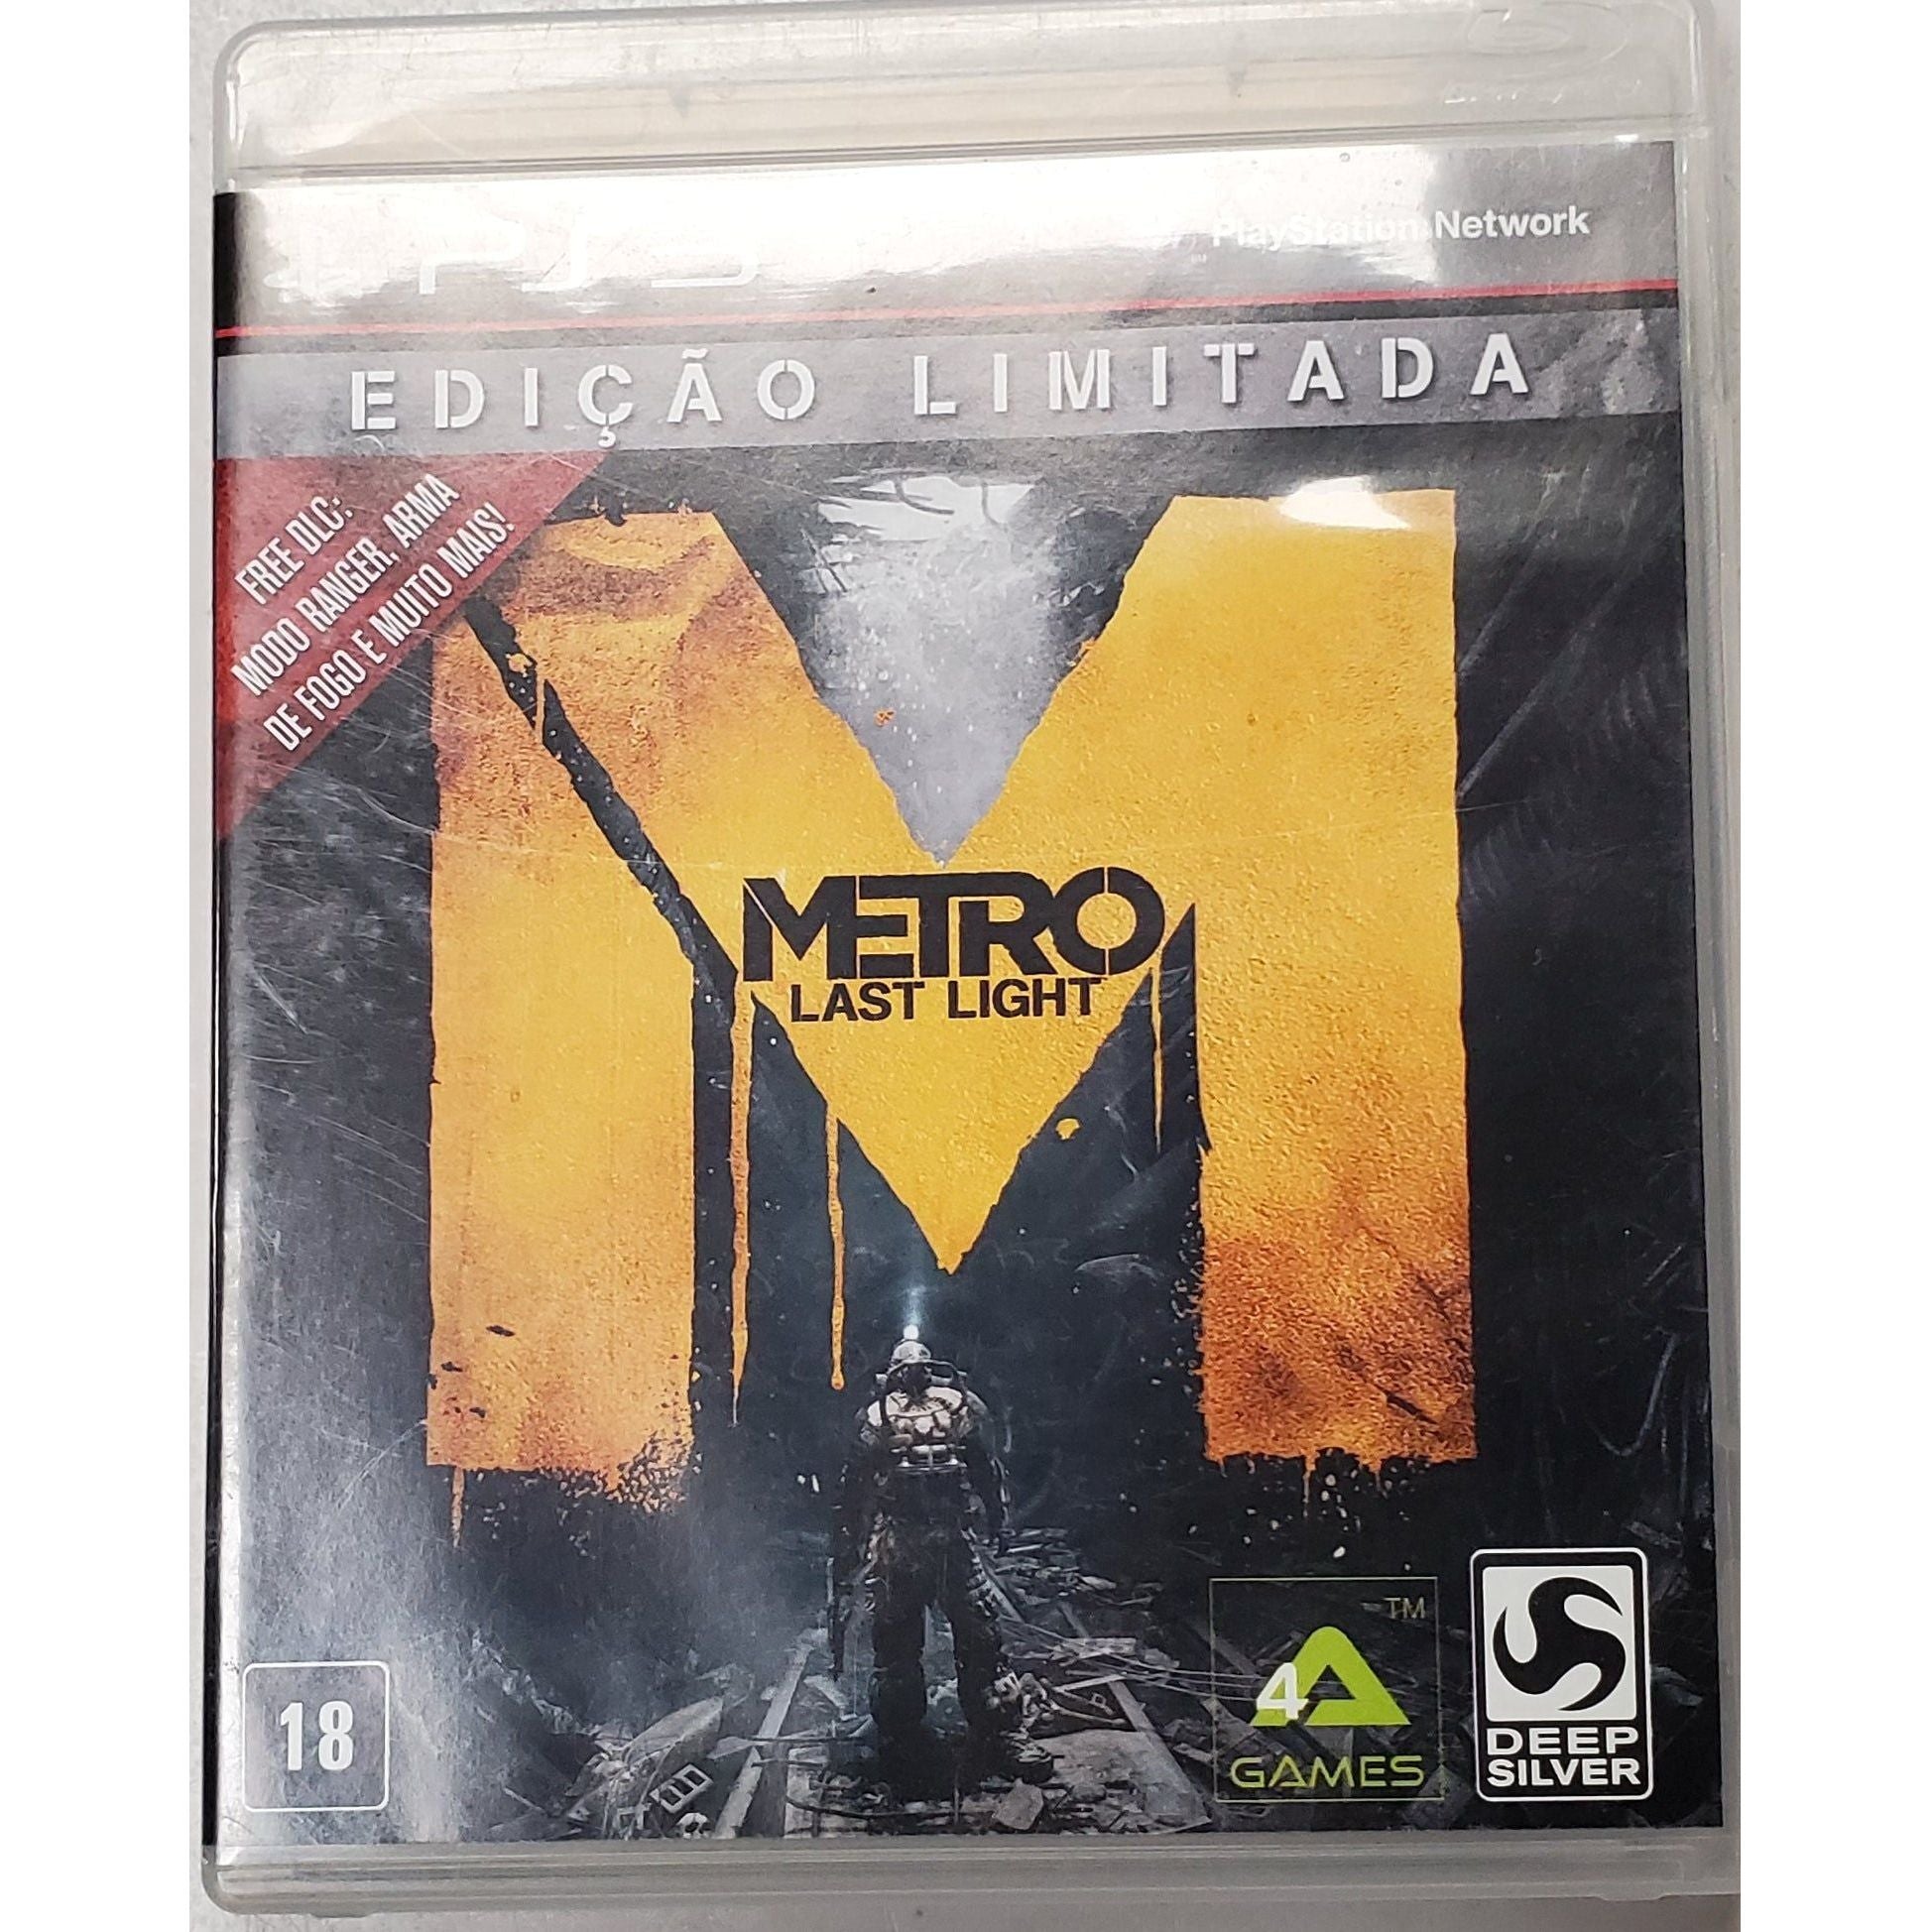 PS3 - Metro Last Light (couverture espagnole. Options linguistiques internationales) 